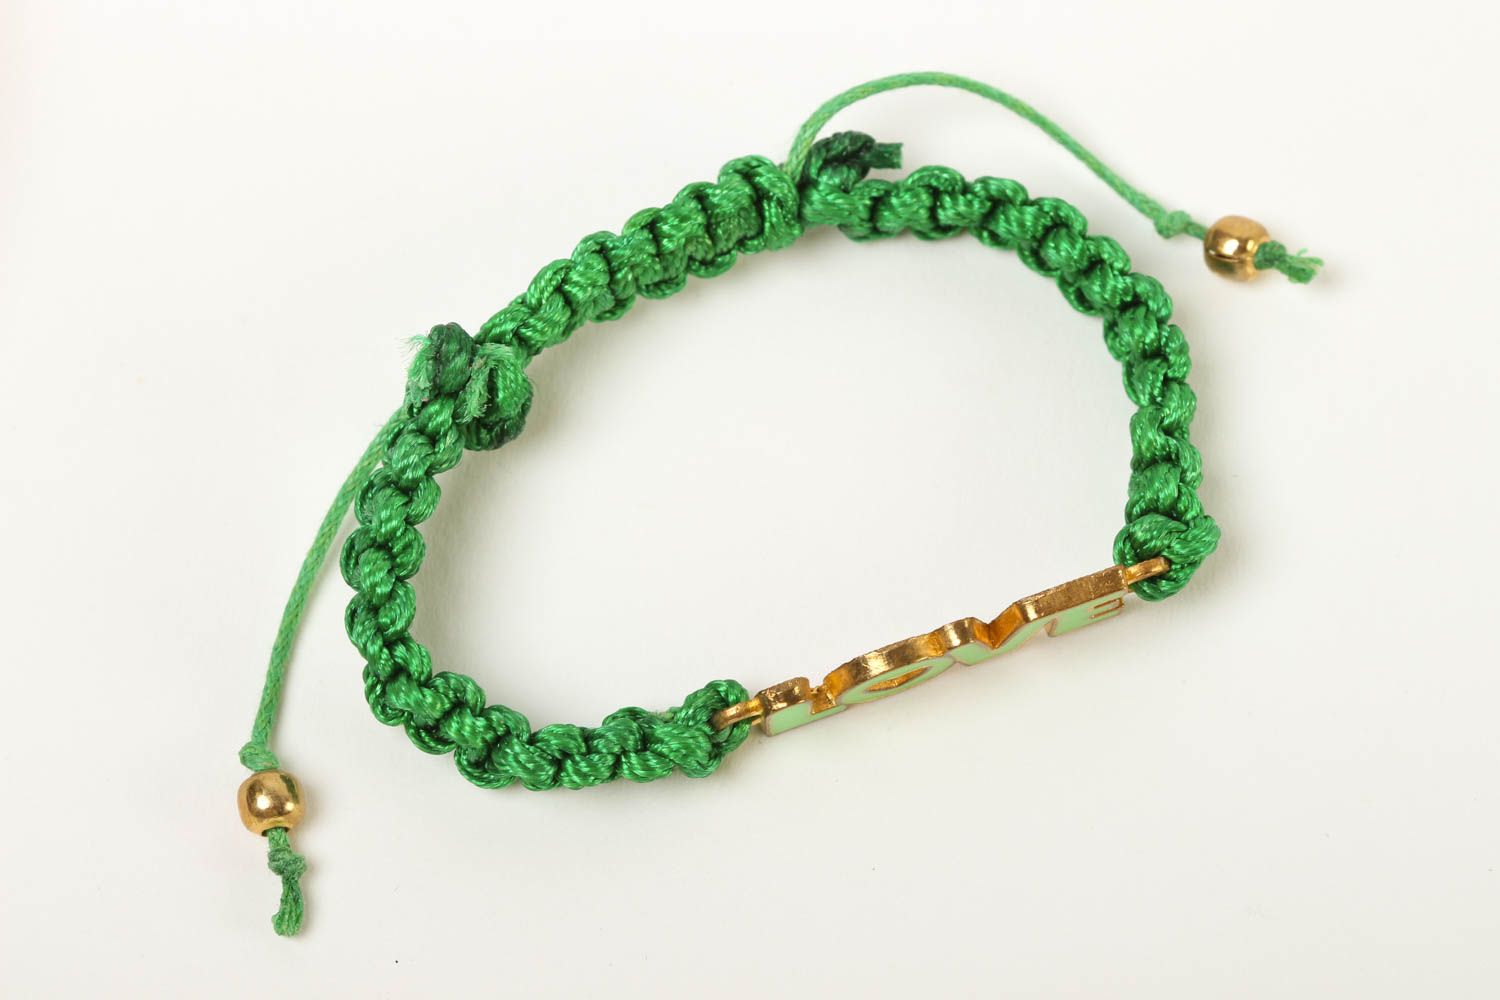 Handmade woven cord bracelet artisan jewelry for girls string bracelet designs photo 2